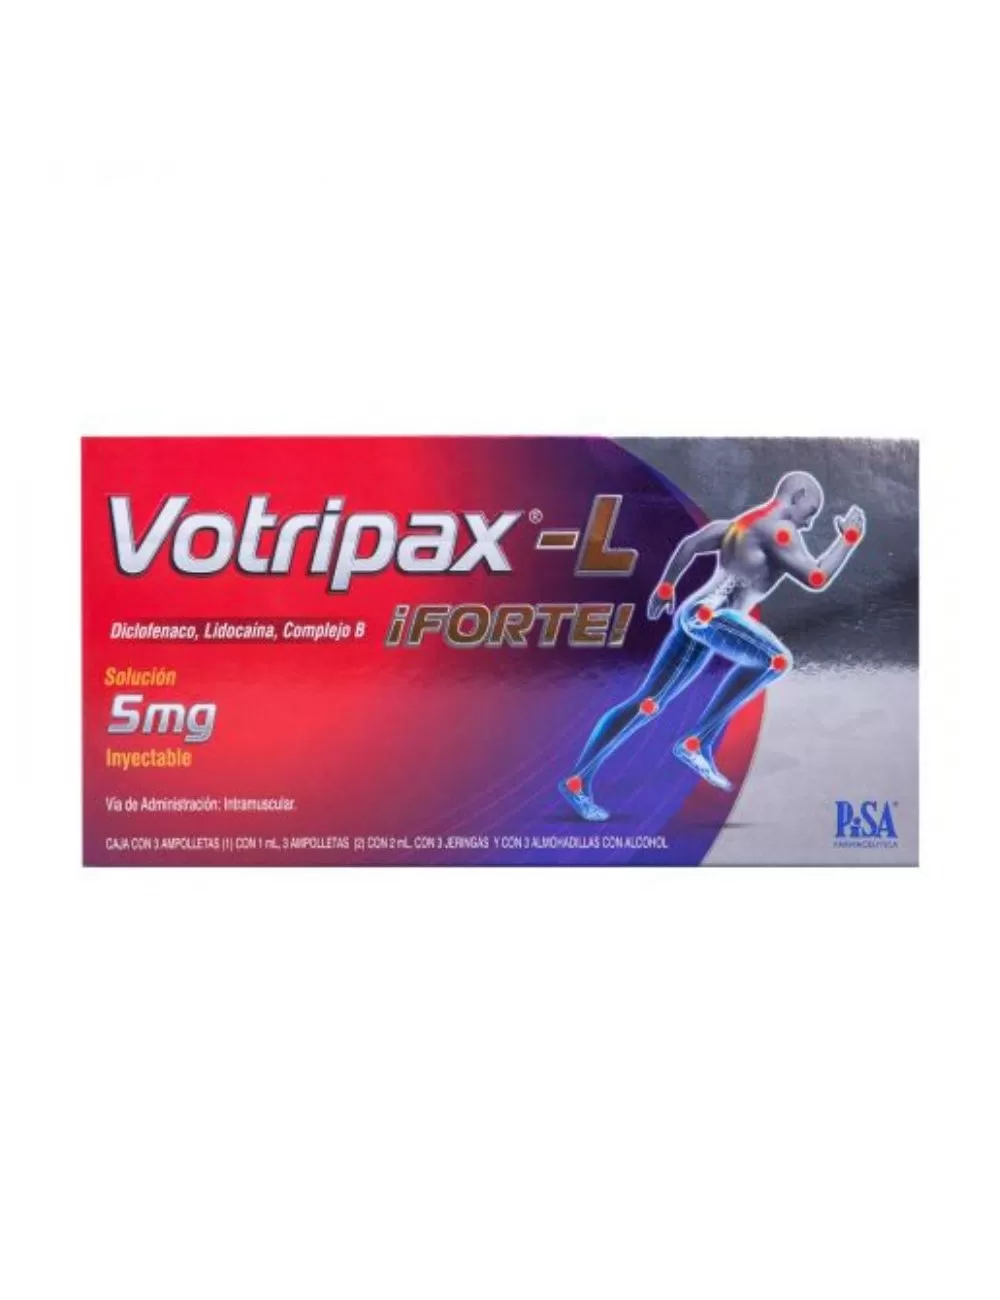 Votripax-L Forte 5 mg Cja Con 3 Ampolletas y 3 Jeringas